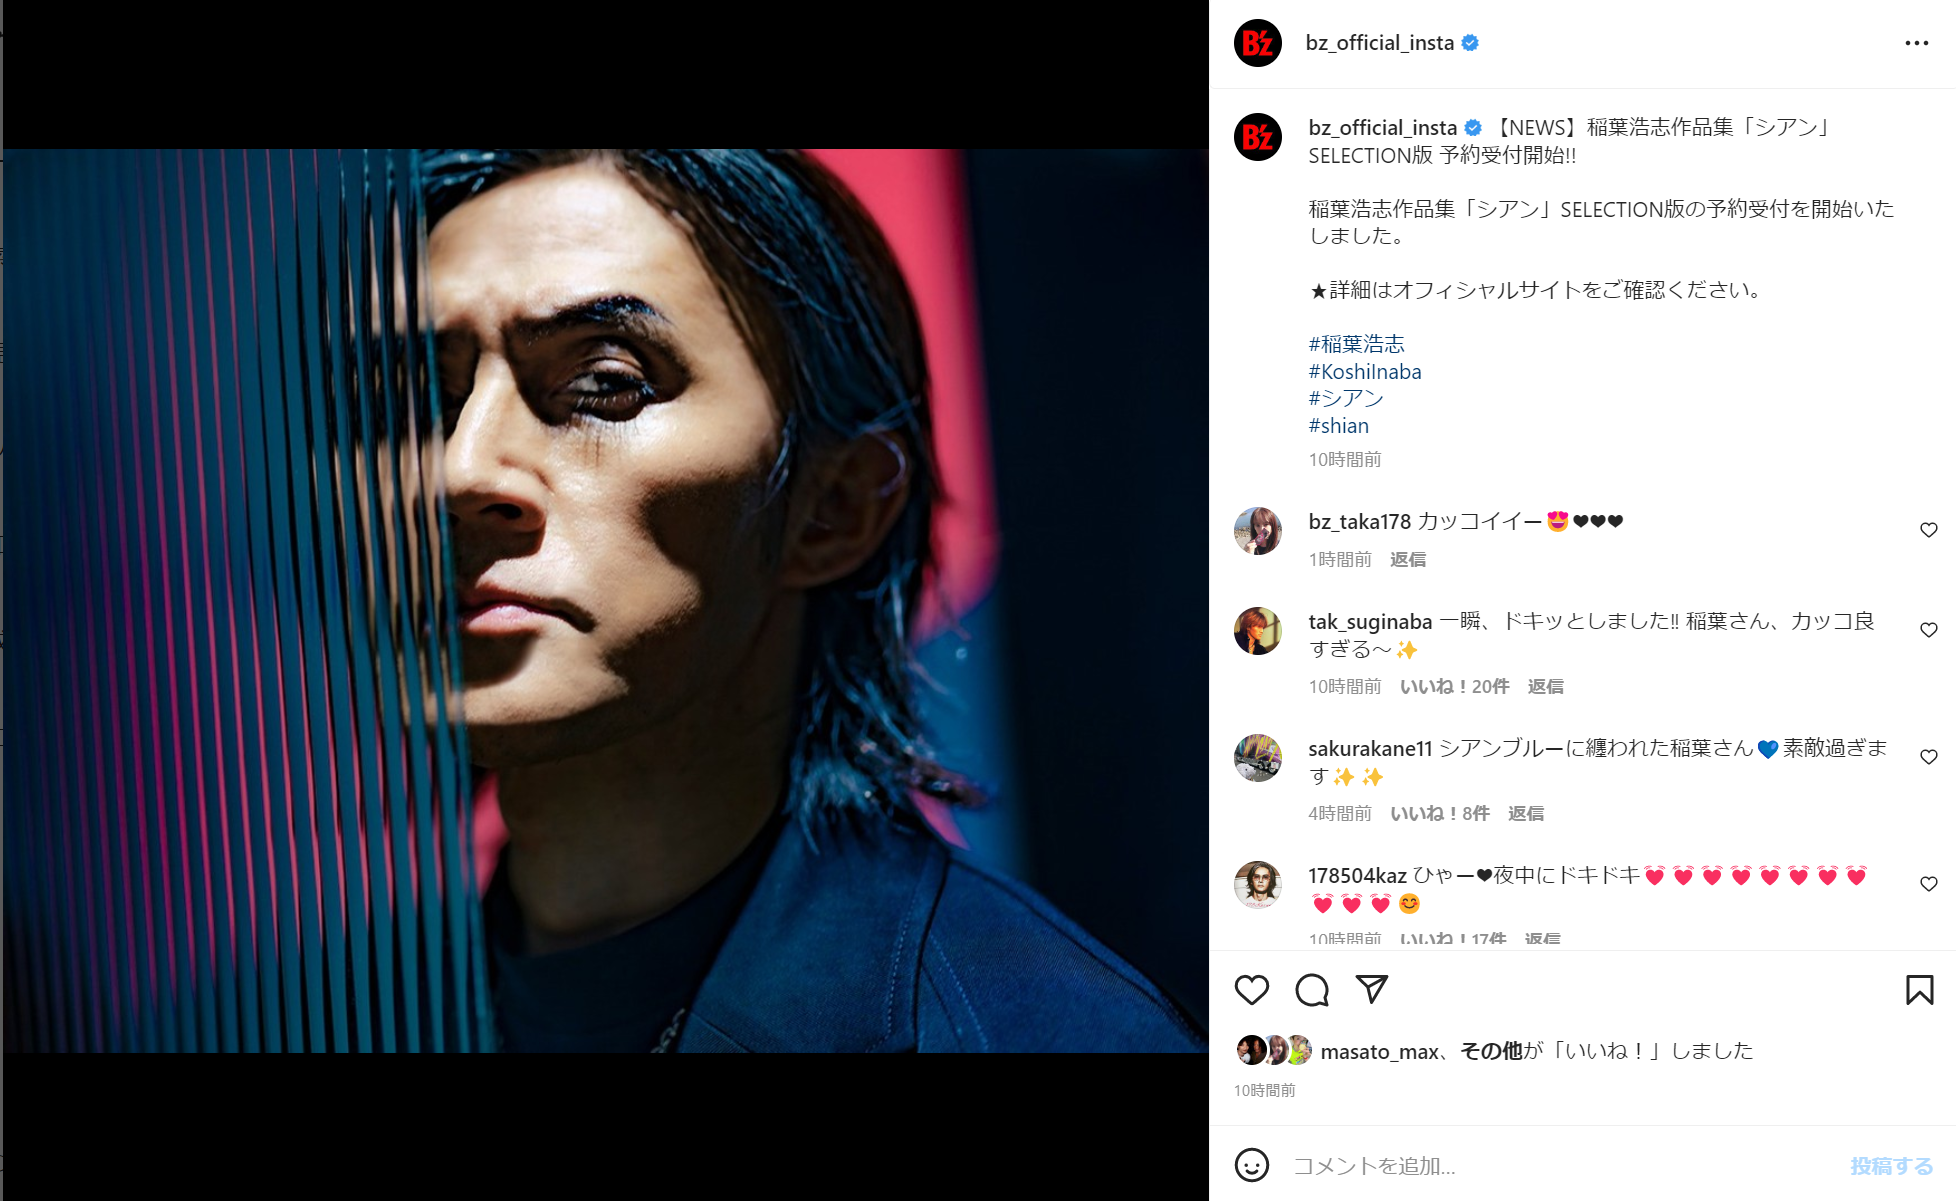 公式Instagramに投稿された『稲葉浩志作品集「シアン」SELECTION版』のイメージ